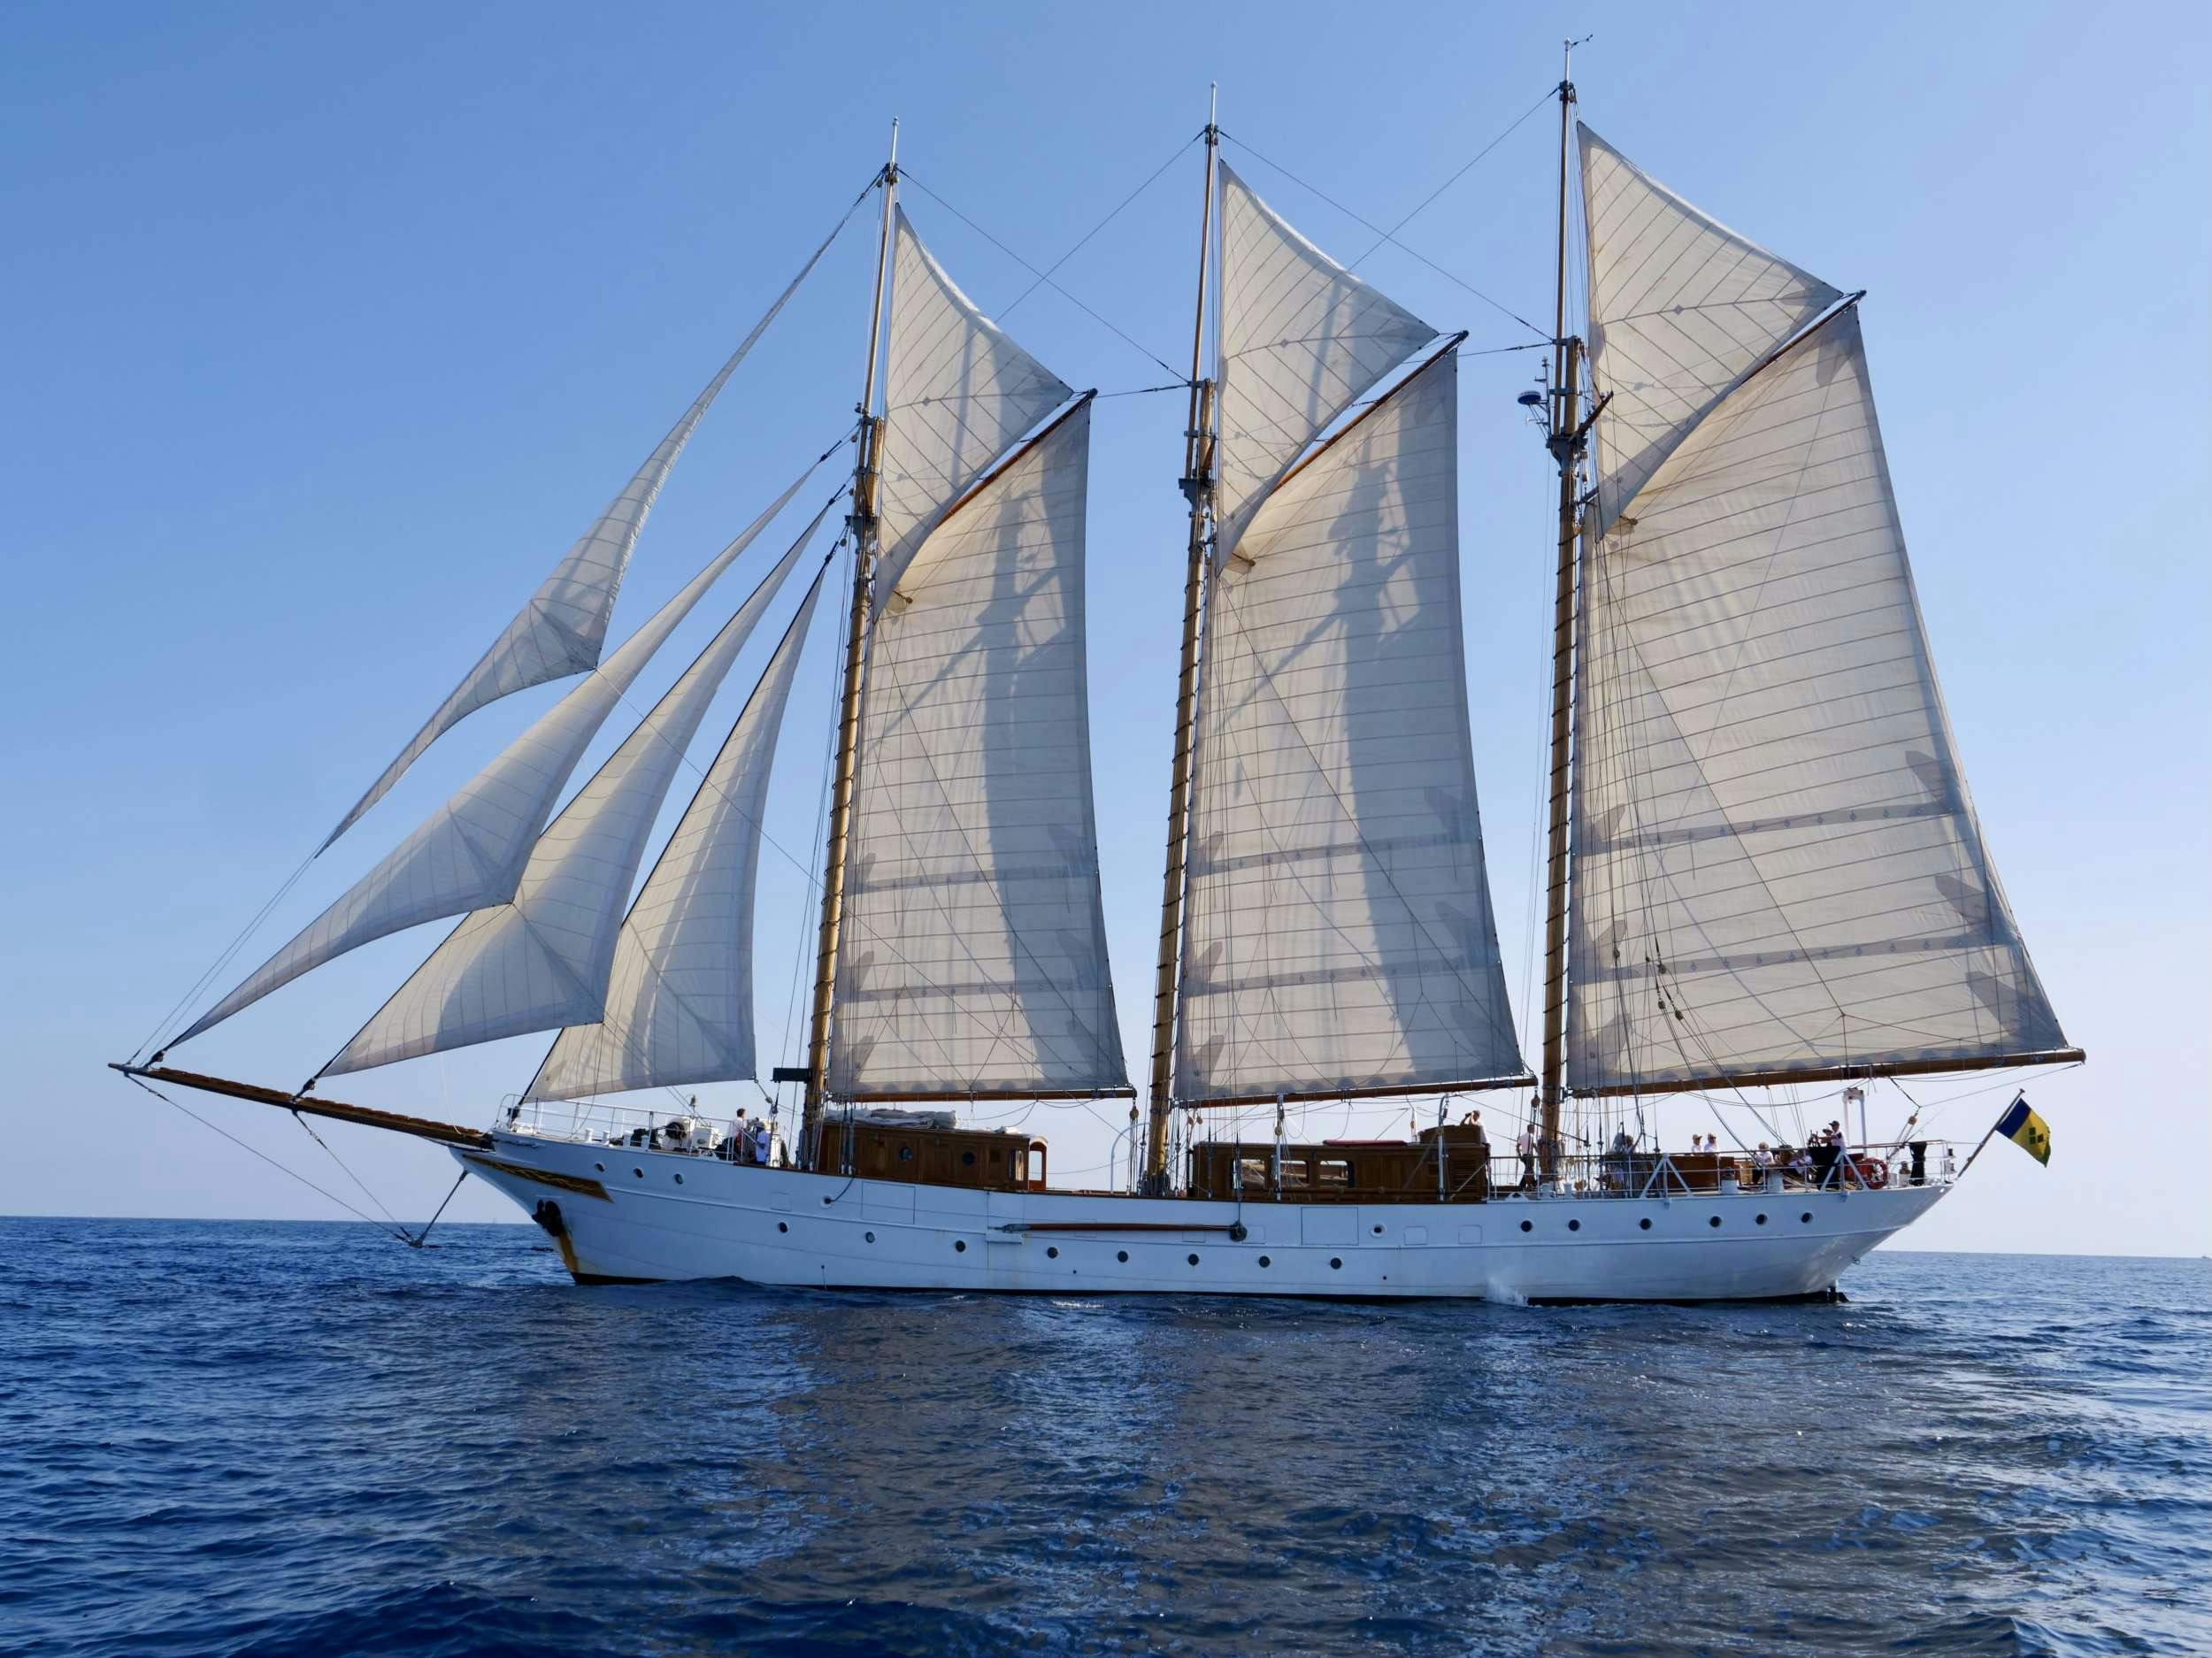 Trinakria - Yacht Charter Castiglioncello & Boat hire in Fr. Riviera & Tyrrhenian Sea 1